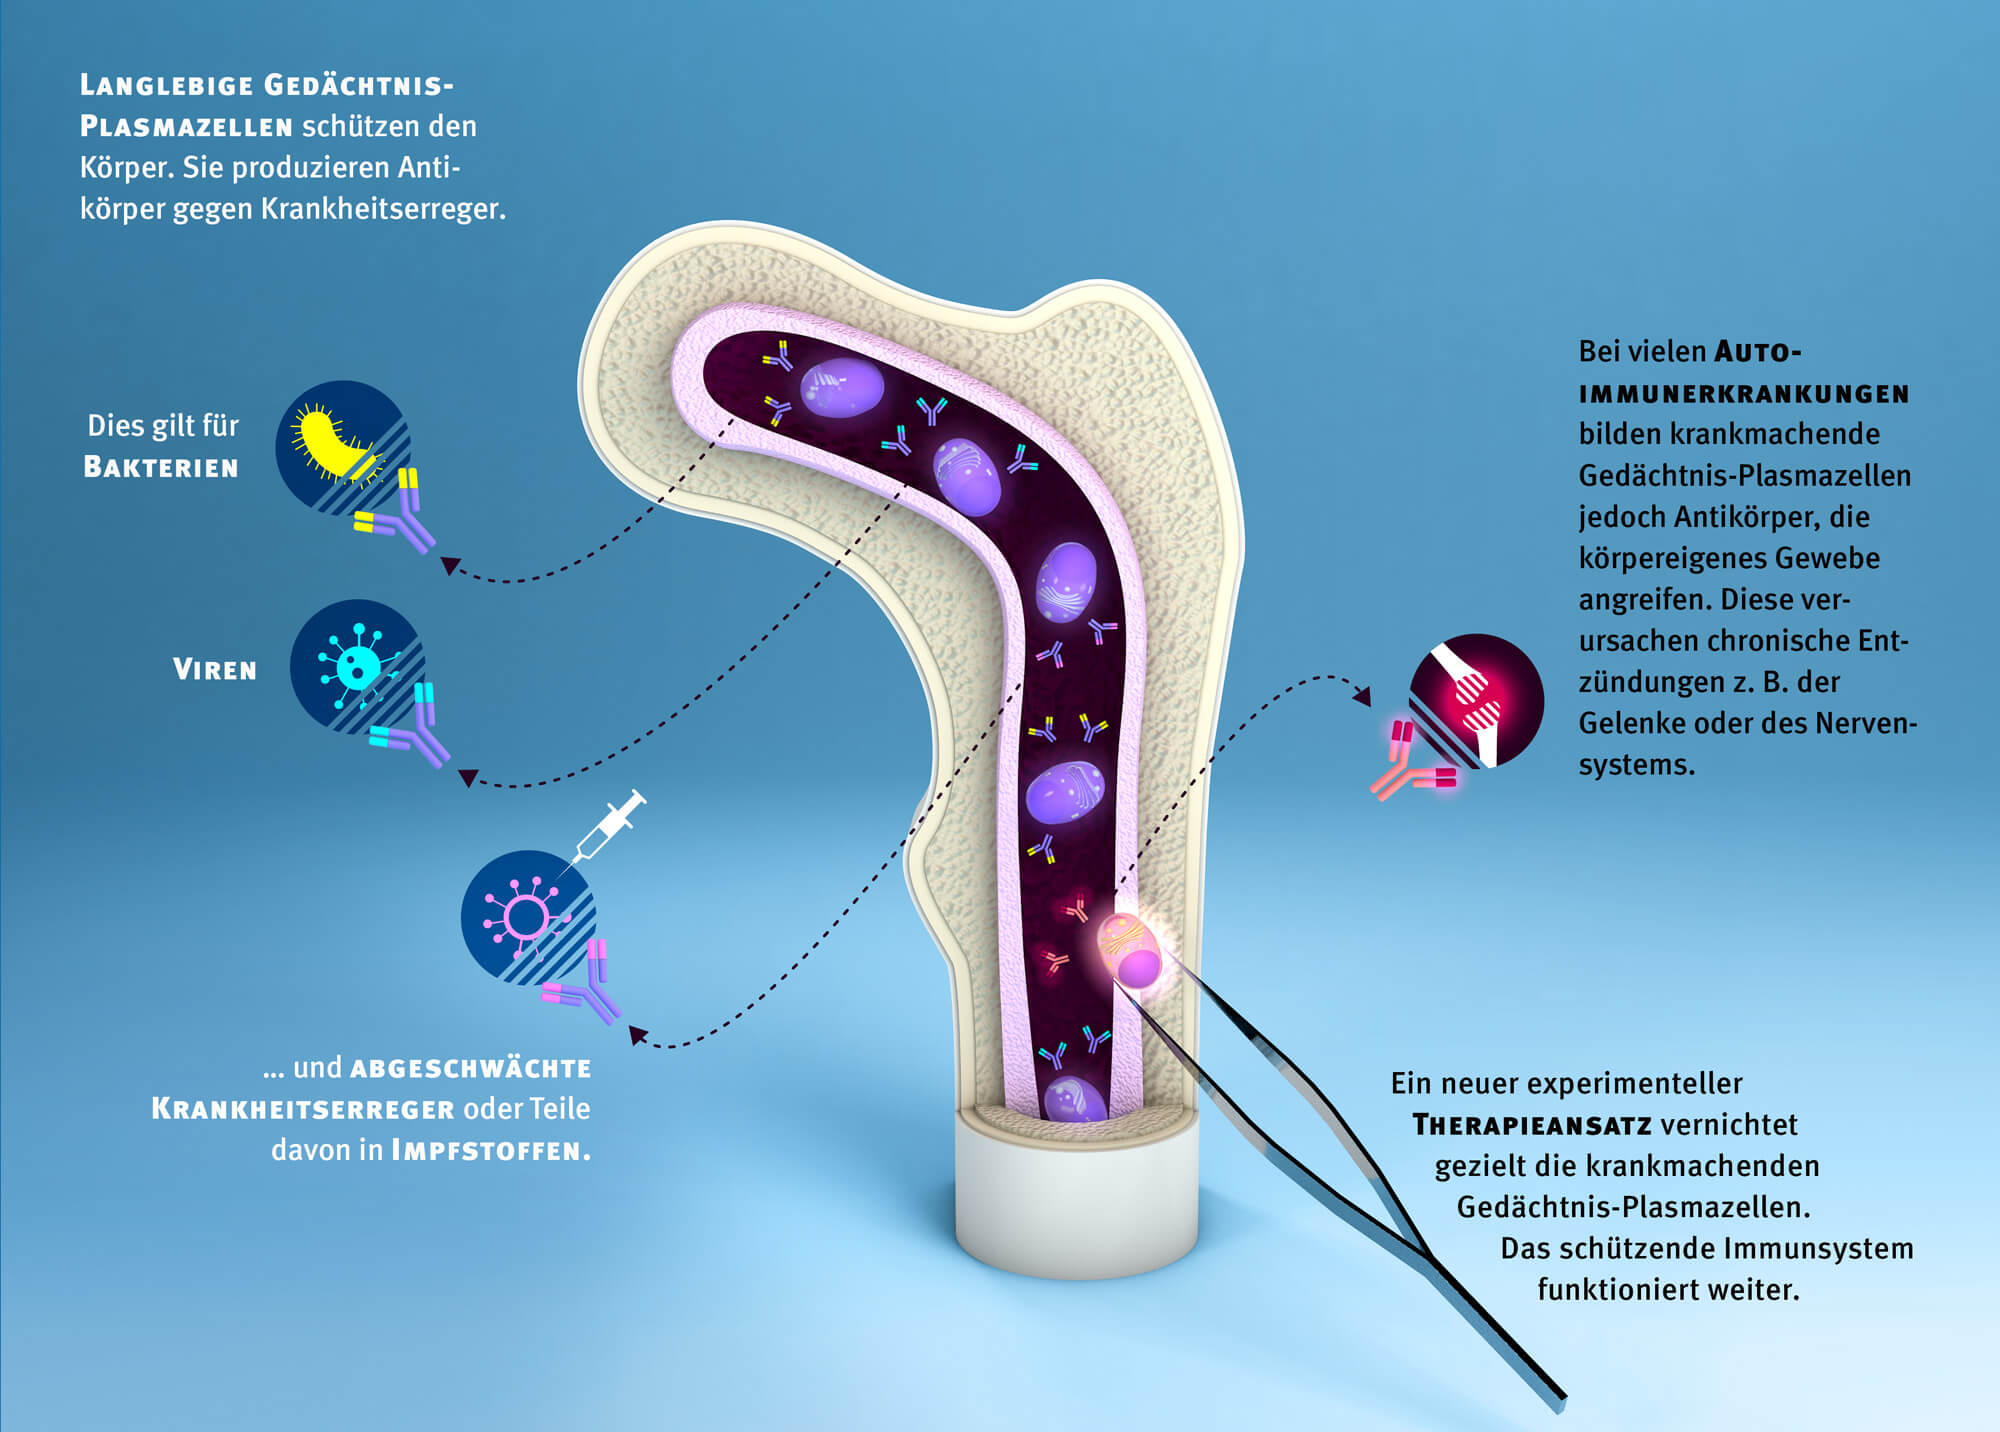 Langlebige Gedächtnis-Plasmazellen und Auto-Immunerkrankungen | Infografik: Daniela Leitner